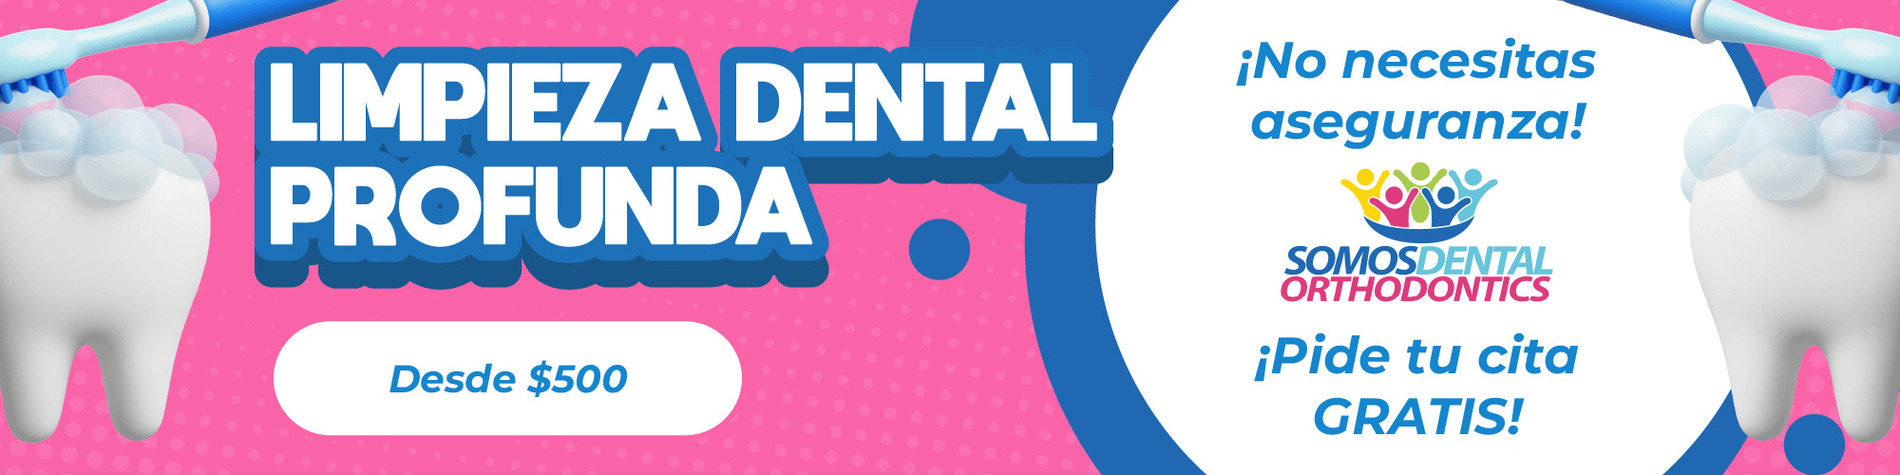 Banner-de-somos-dental-de-Ofertas-en-limpieza-dental-profunda-en-Phoenix-Arizona-en-Somos-Dental-01